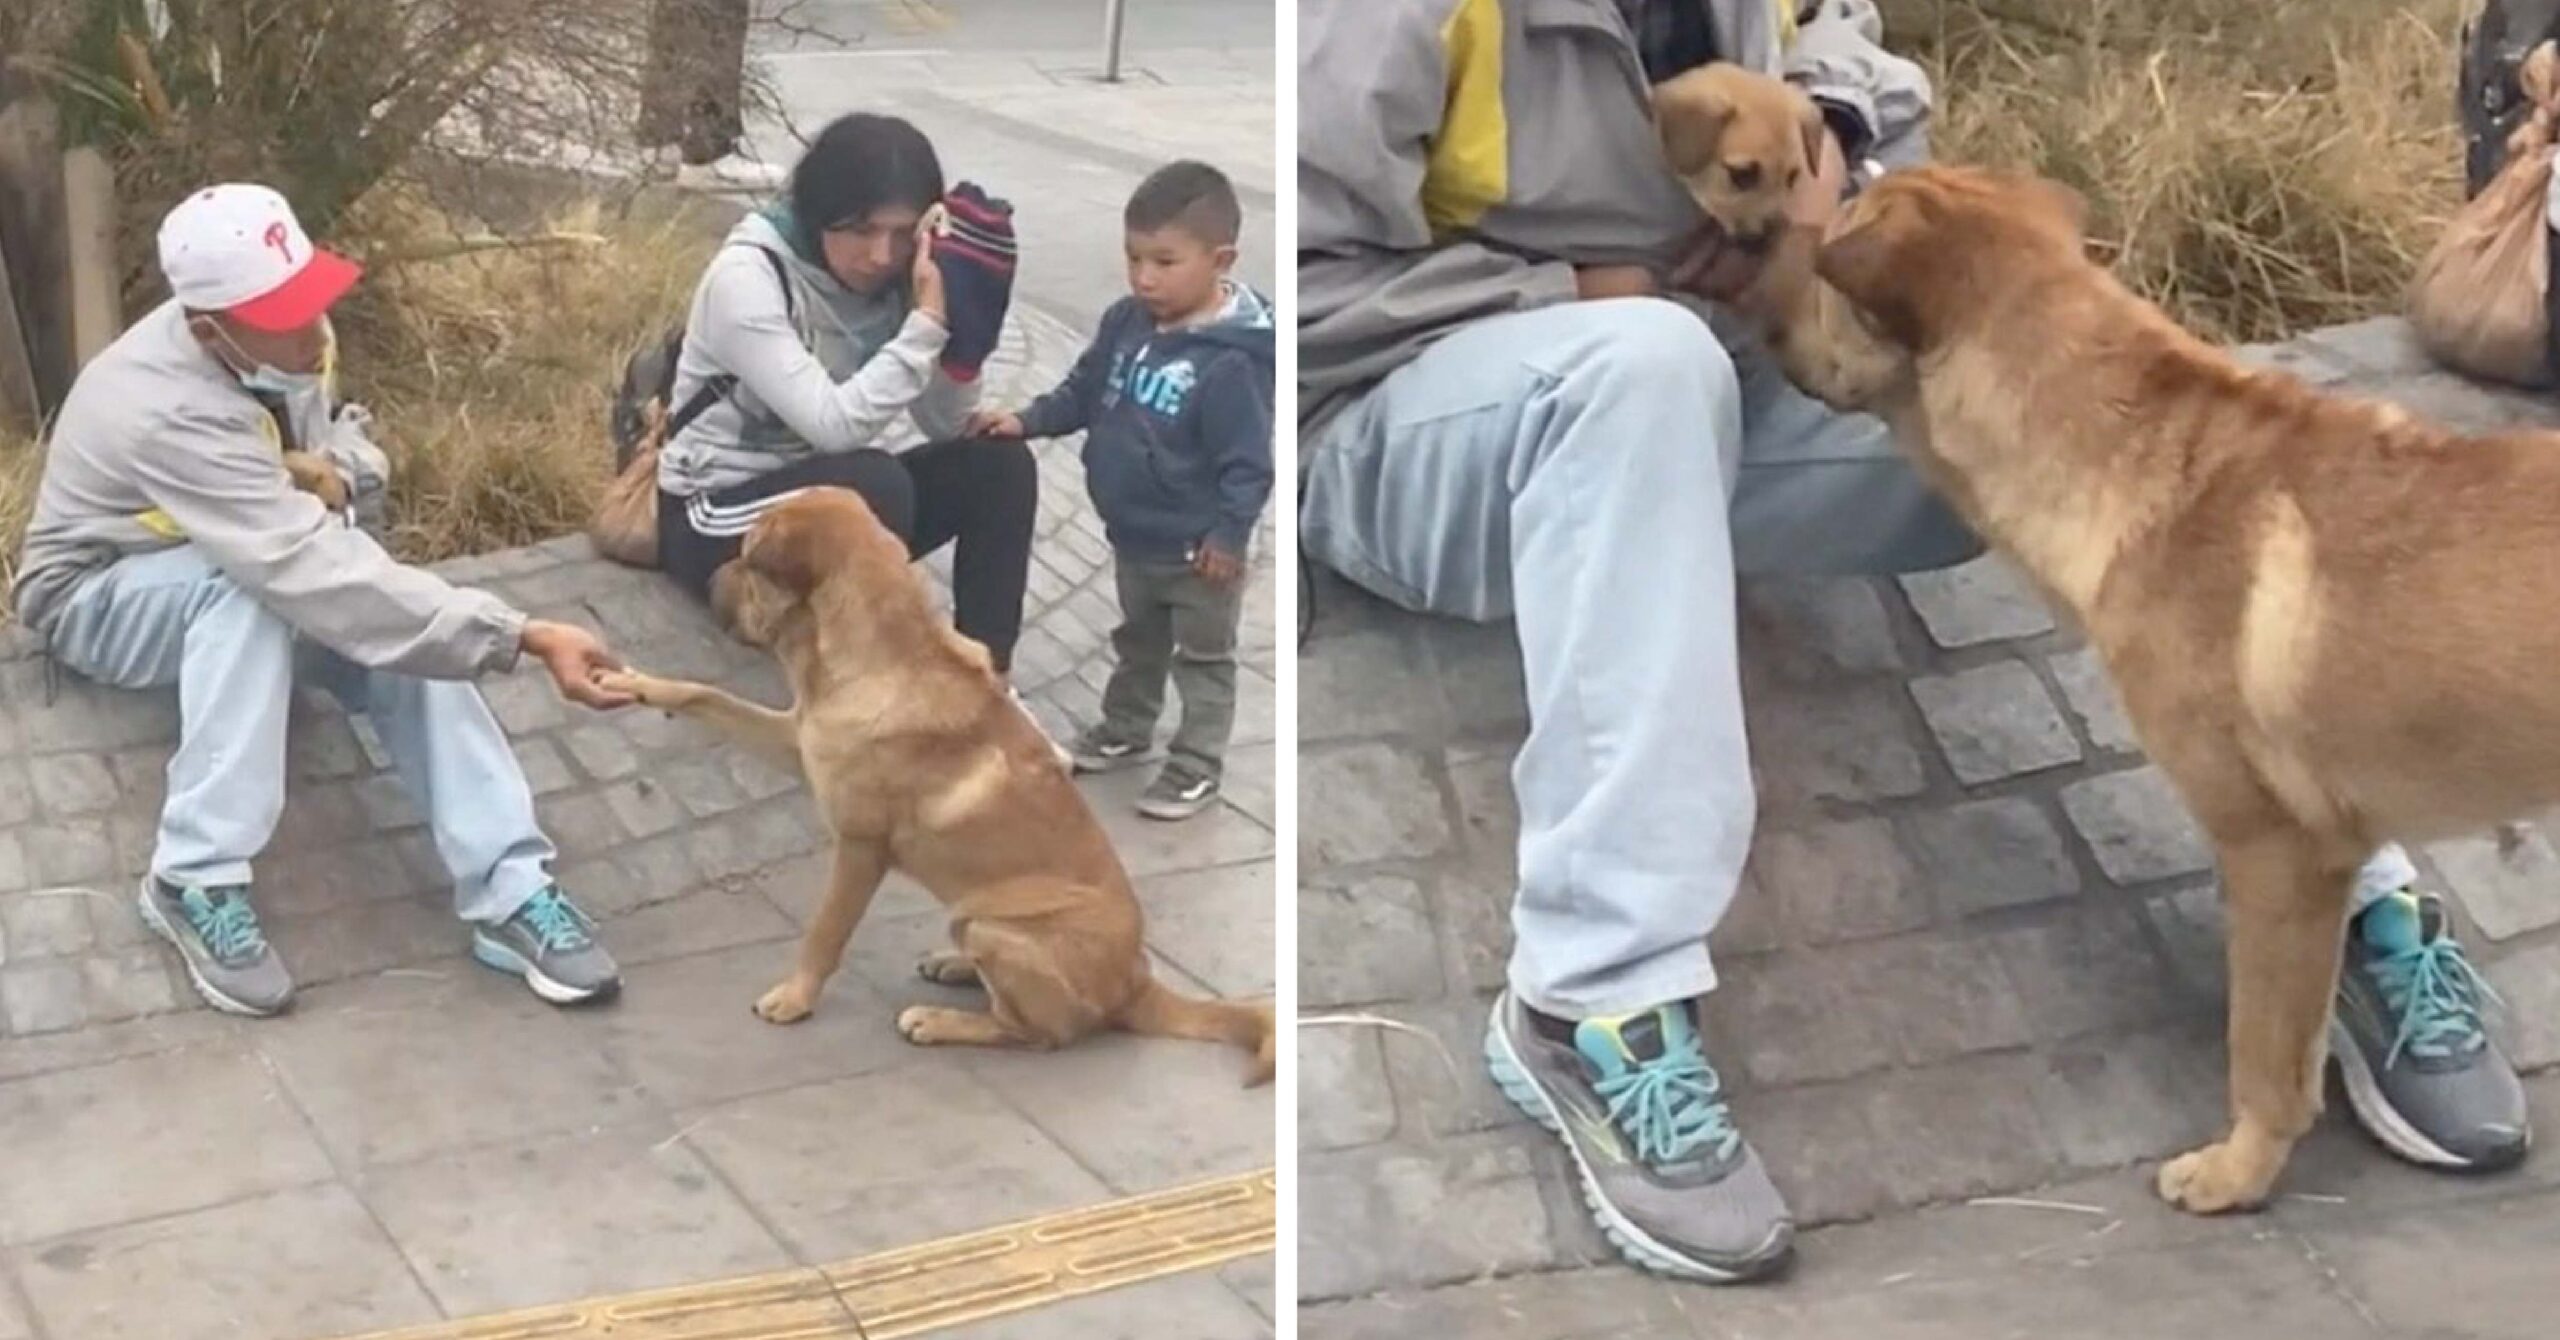 Perrito callejero se acerca a saludar a un hombre y su cachorro. Le dio la patita amablemente